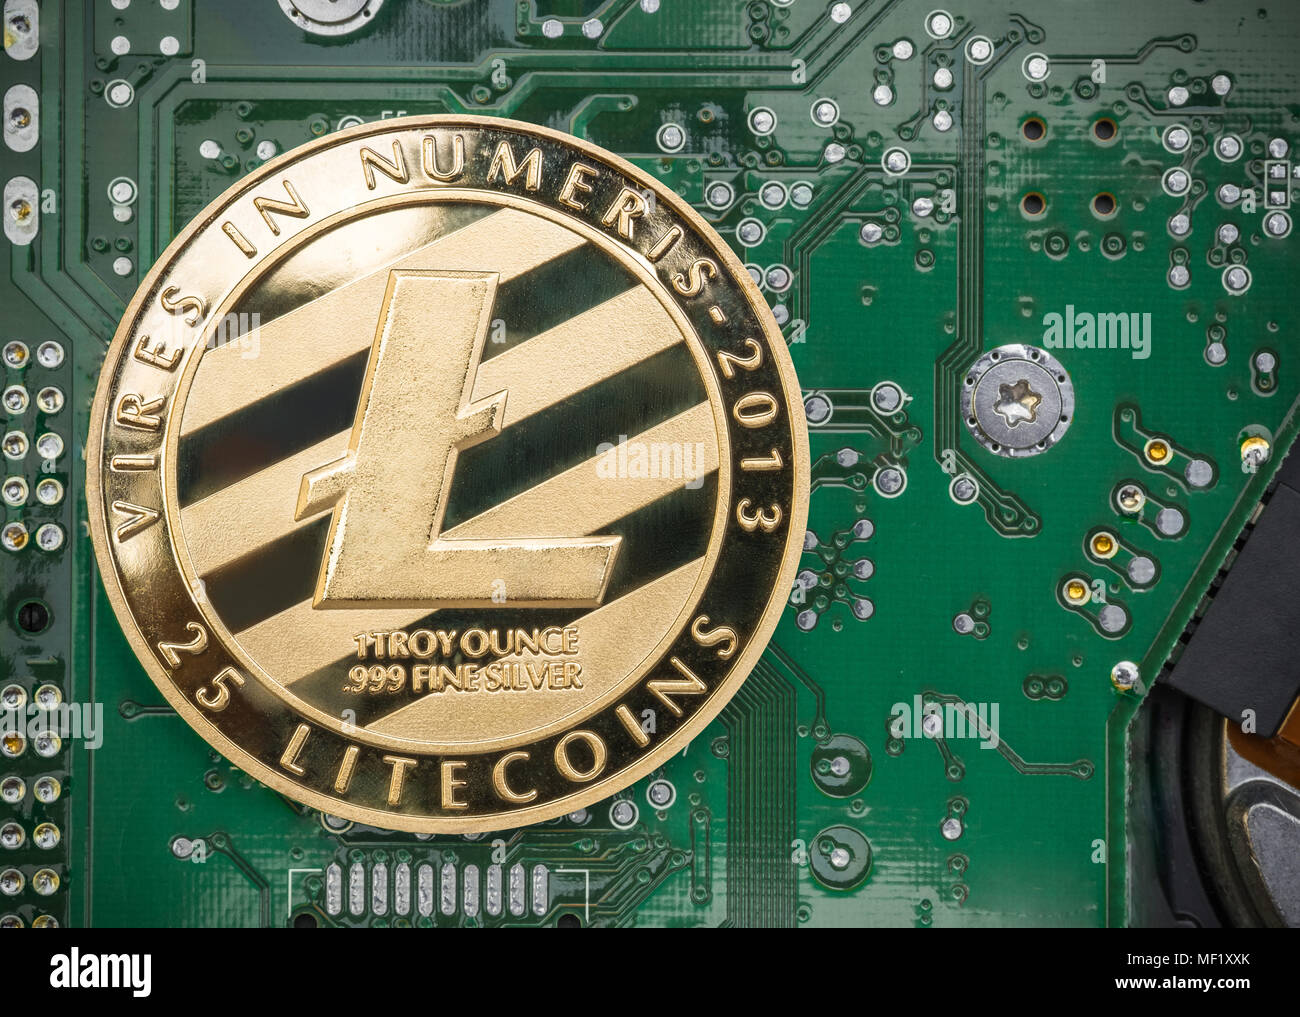 Litecoin or métallique sur la carte mère du circuit électronique.crypto.minière monnaie argent numérique sur réseau blockchain Banque D'Images